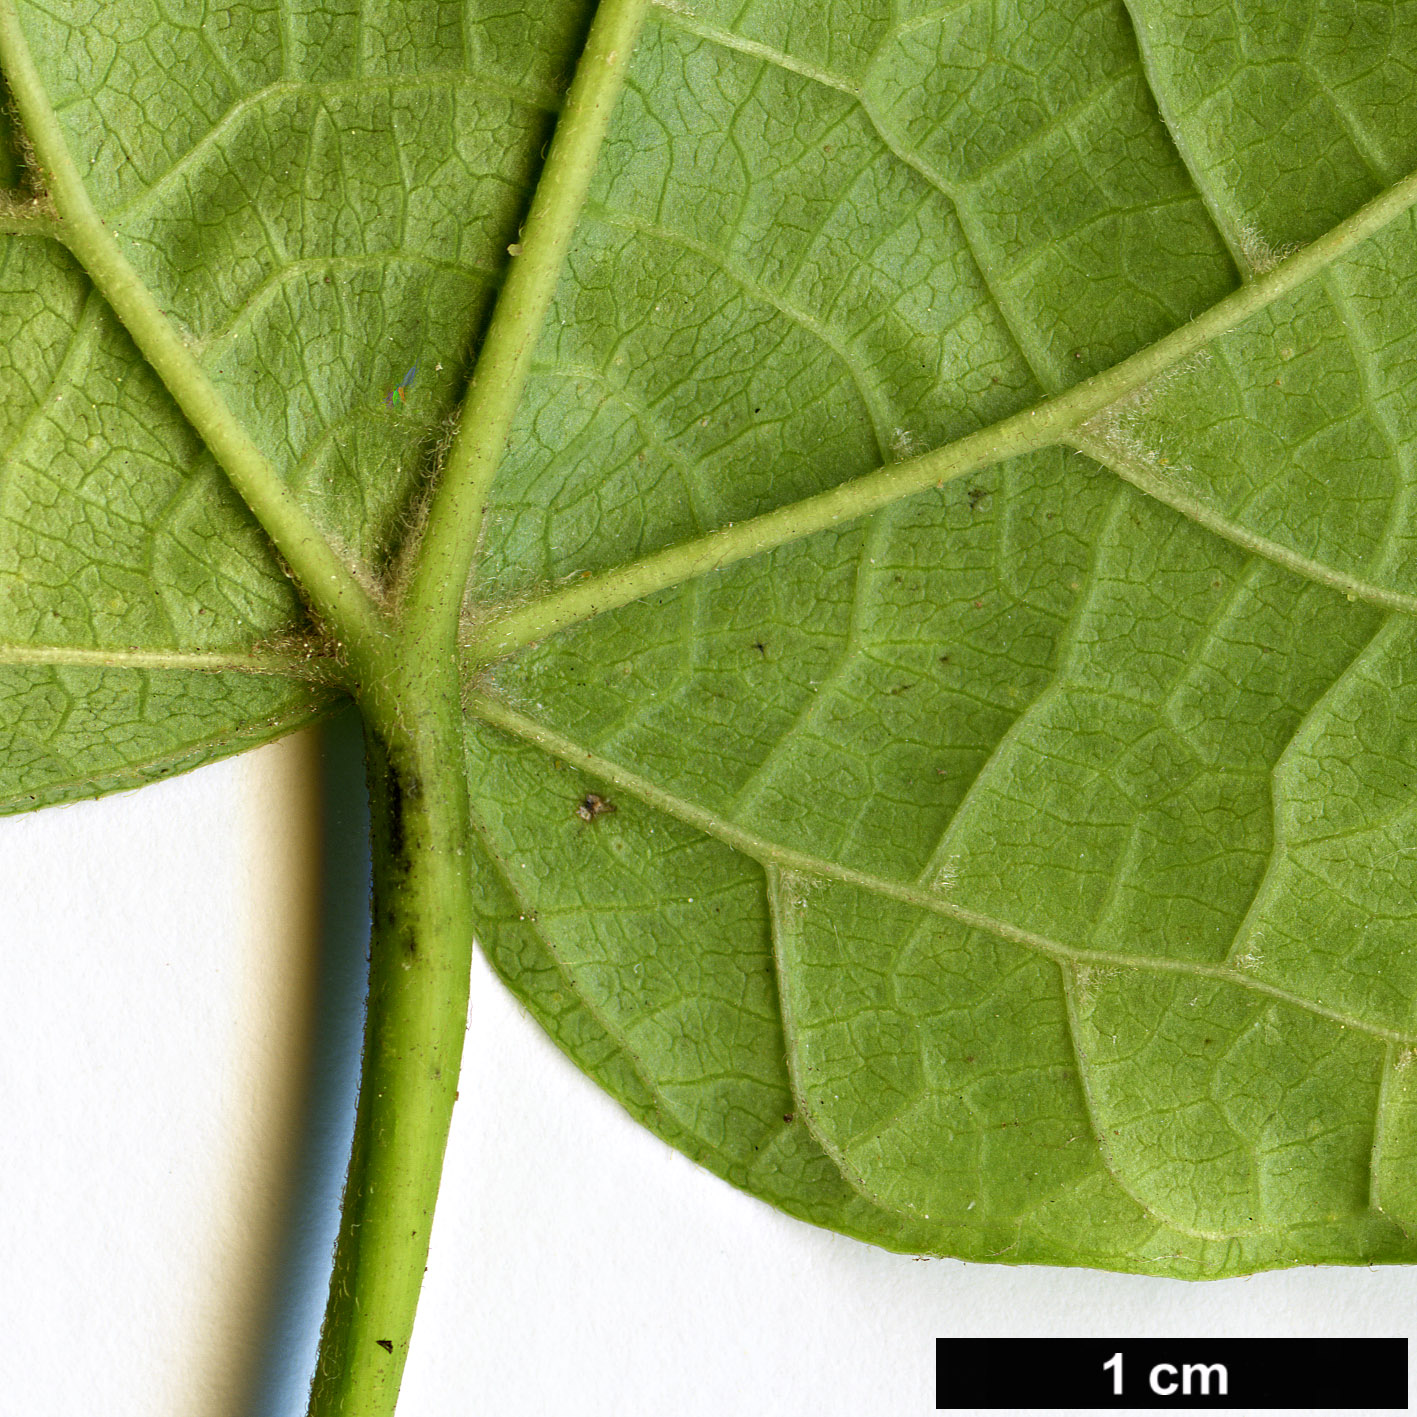 High resolution image: Family: Cornaceae - Genus: Alangium - Taxon: platanifolium